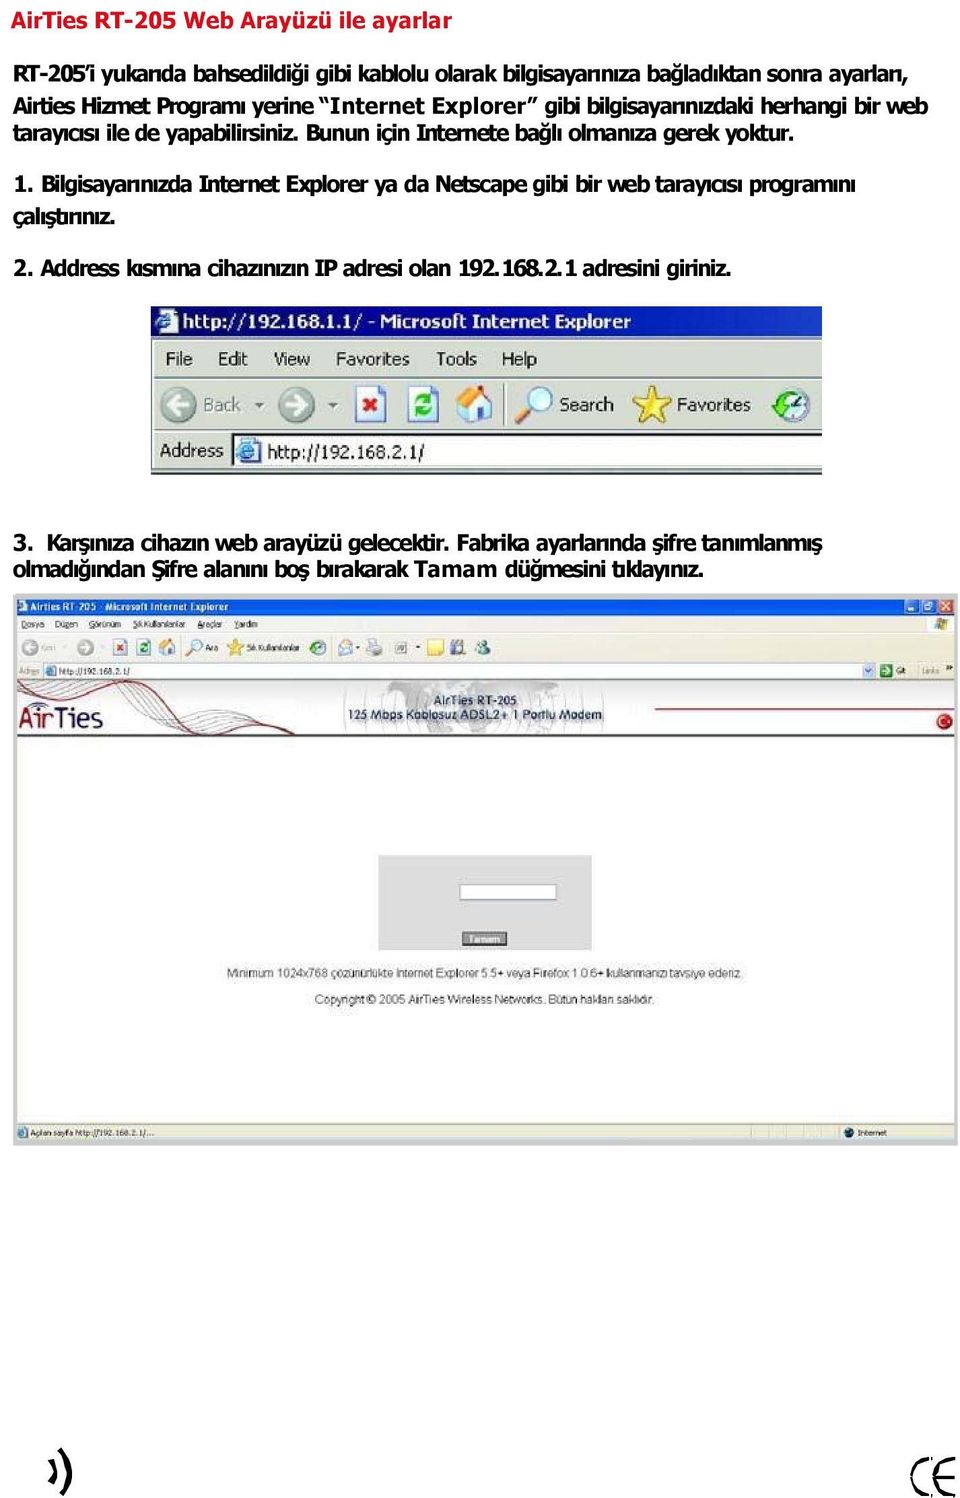 Bilgisayar n zda Internet Explorer ya da Netscape gibi bir web taray c s program n çal şt r n z. 2. Address k sm na cihaz n z n IP adresi olan 192.168.2.1 adresini giriniz.